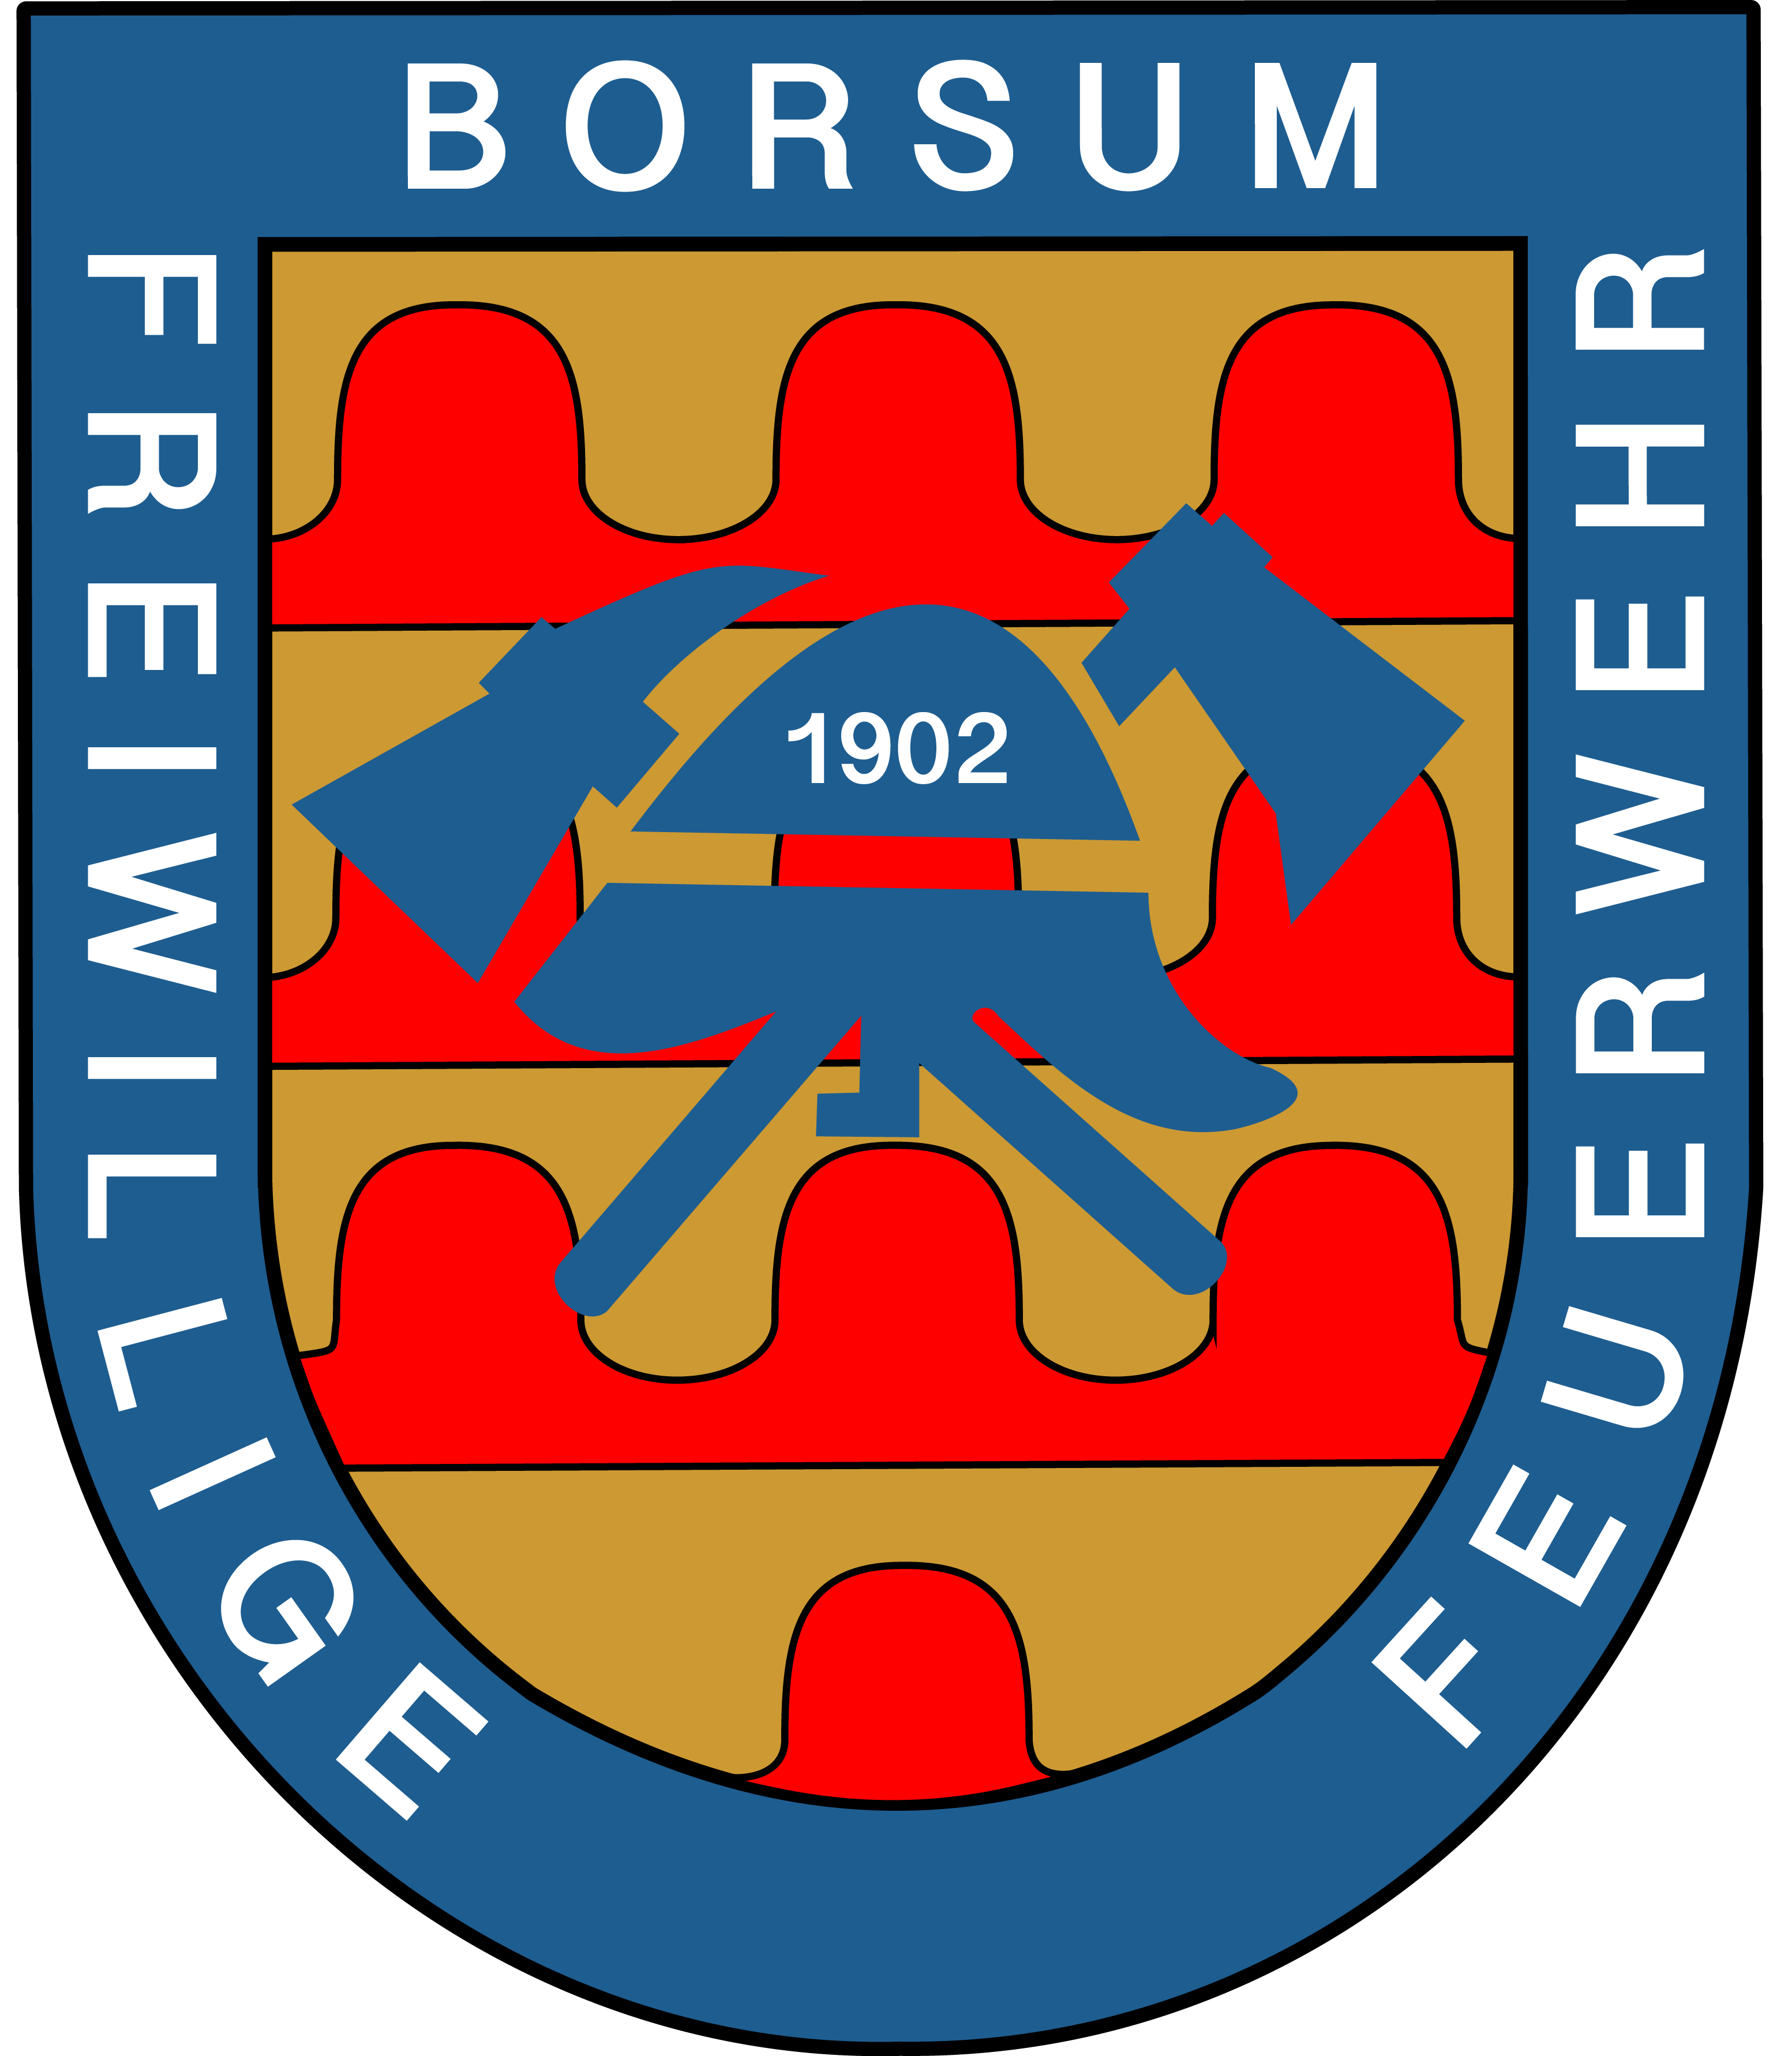 Wappen der Freiwilligen Feuerwehr Borsum